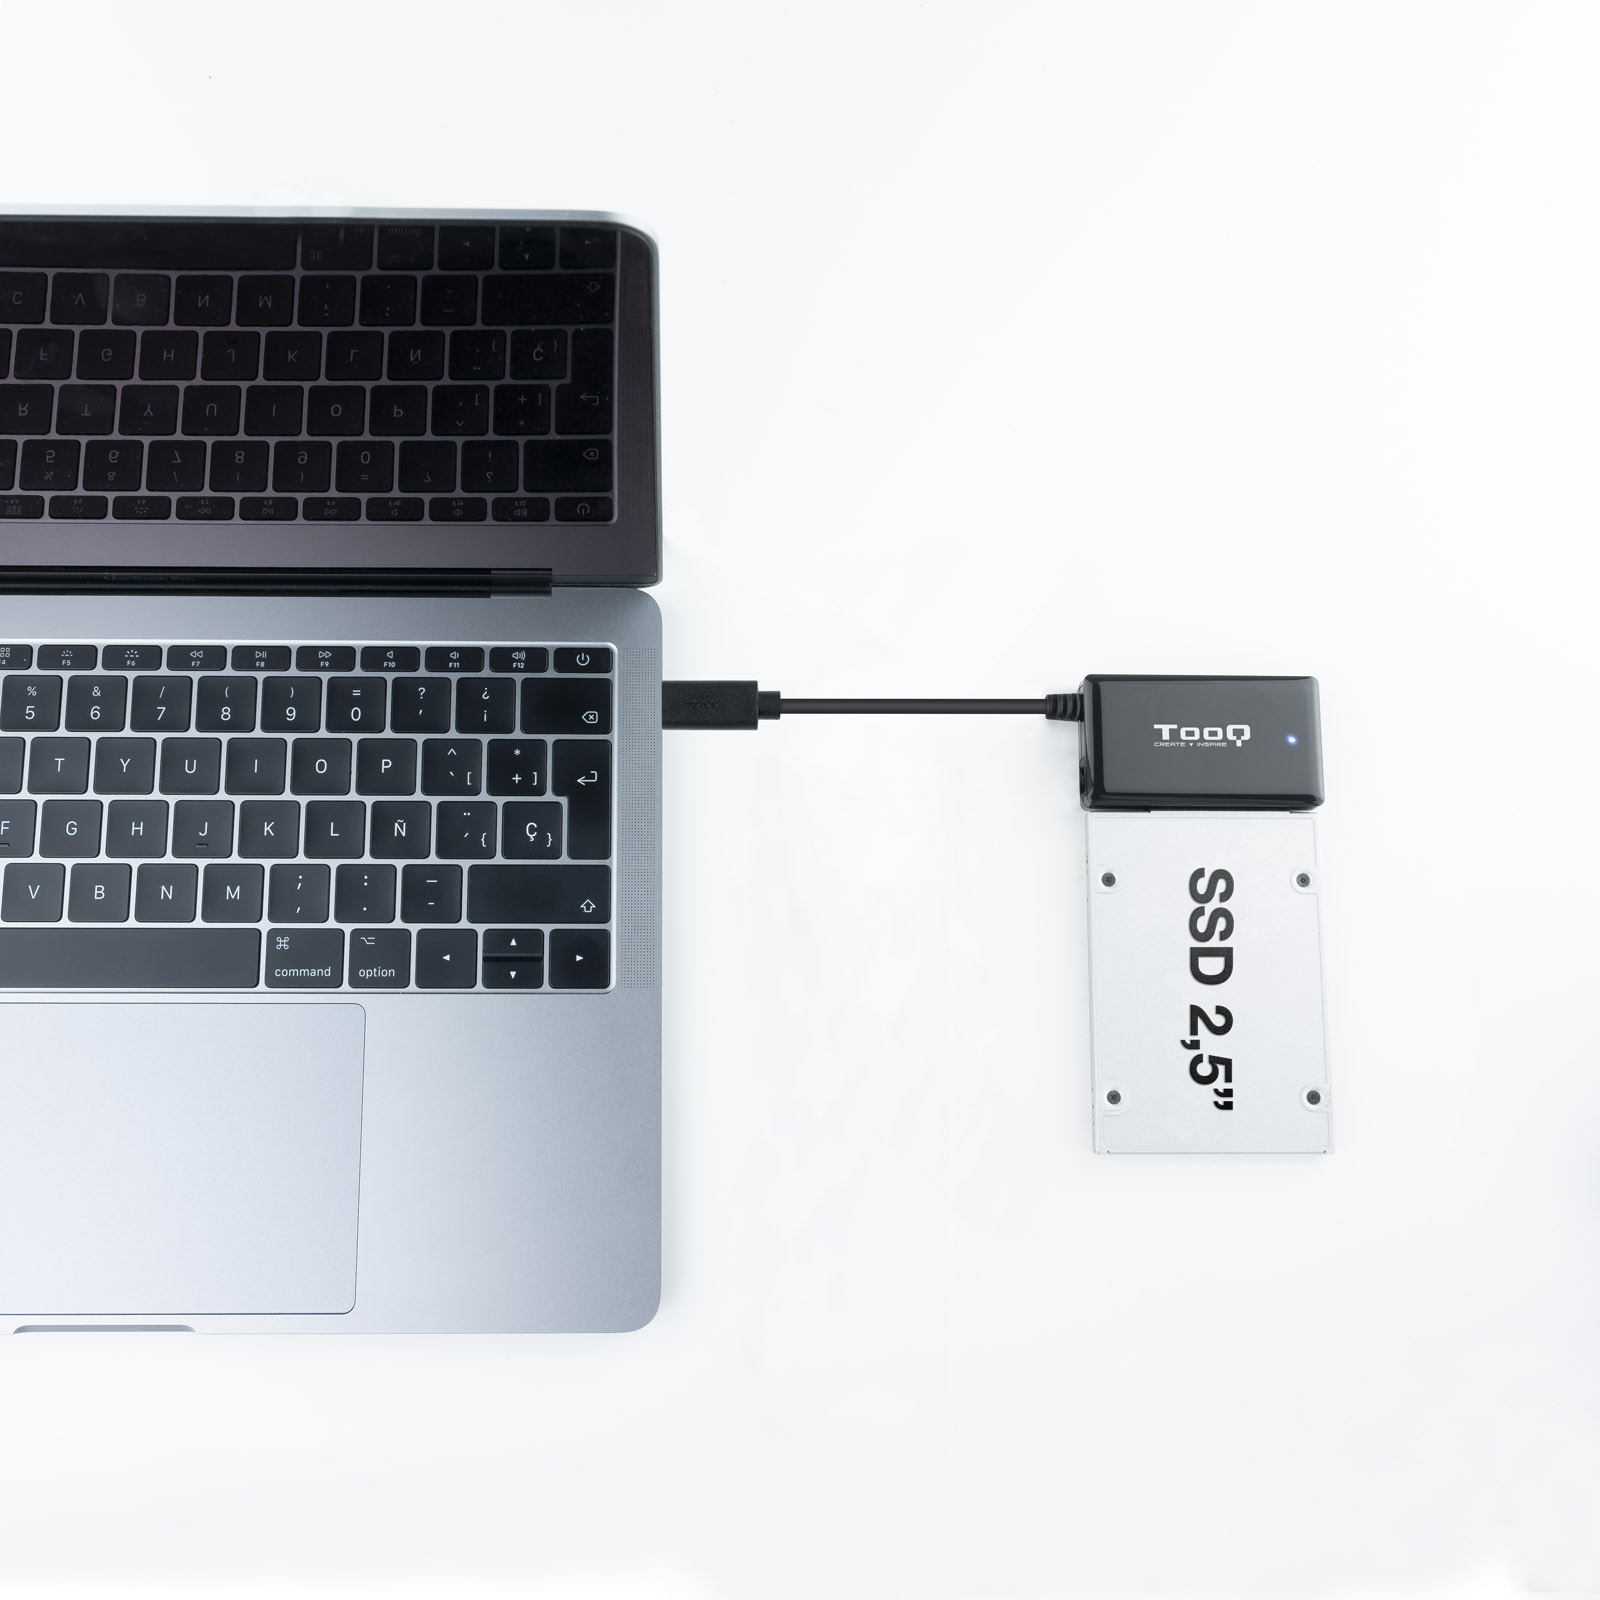 Tooq - Adaptador Tooq USB 3.0 USB-C SATA HDD/SSD 2.5" / 3.5"